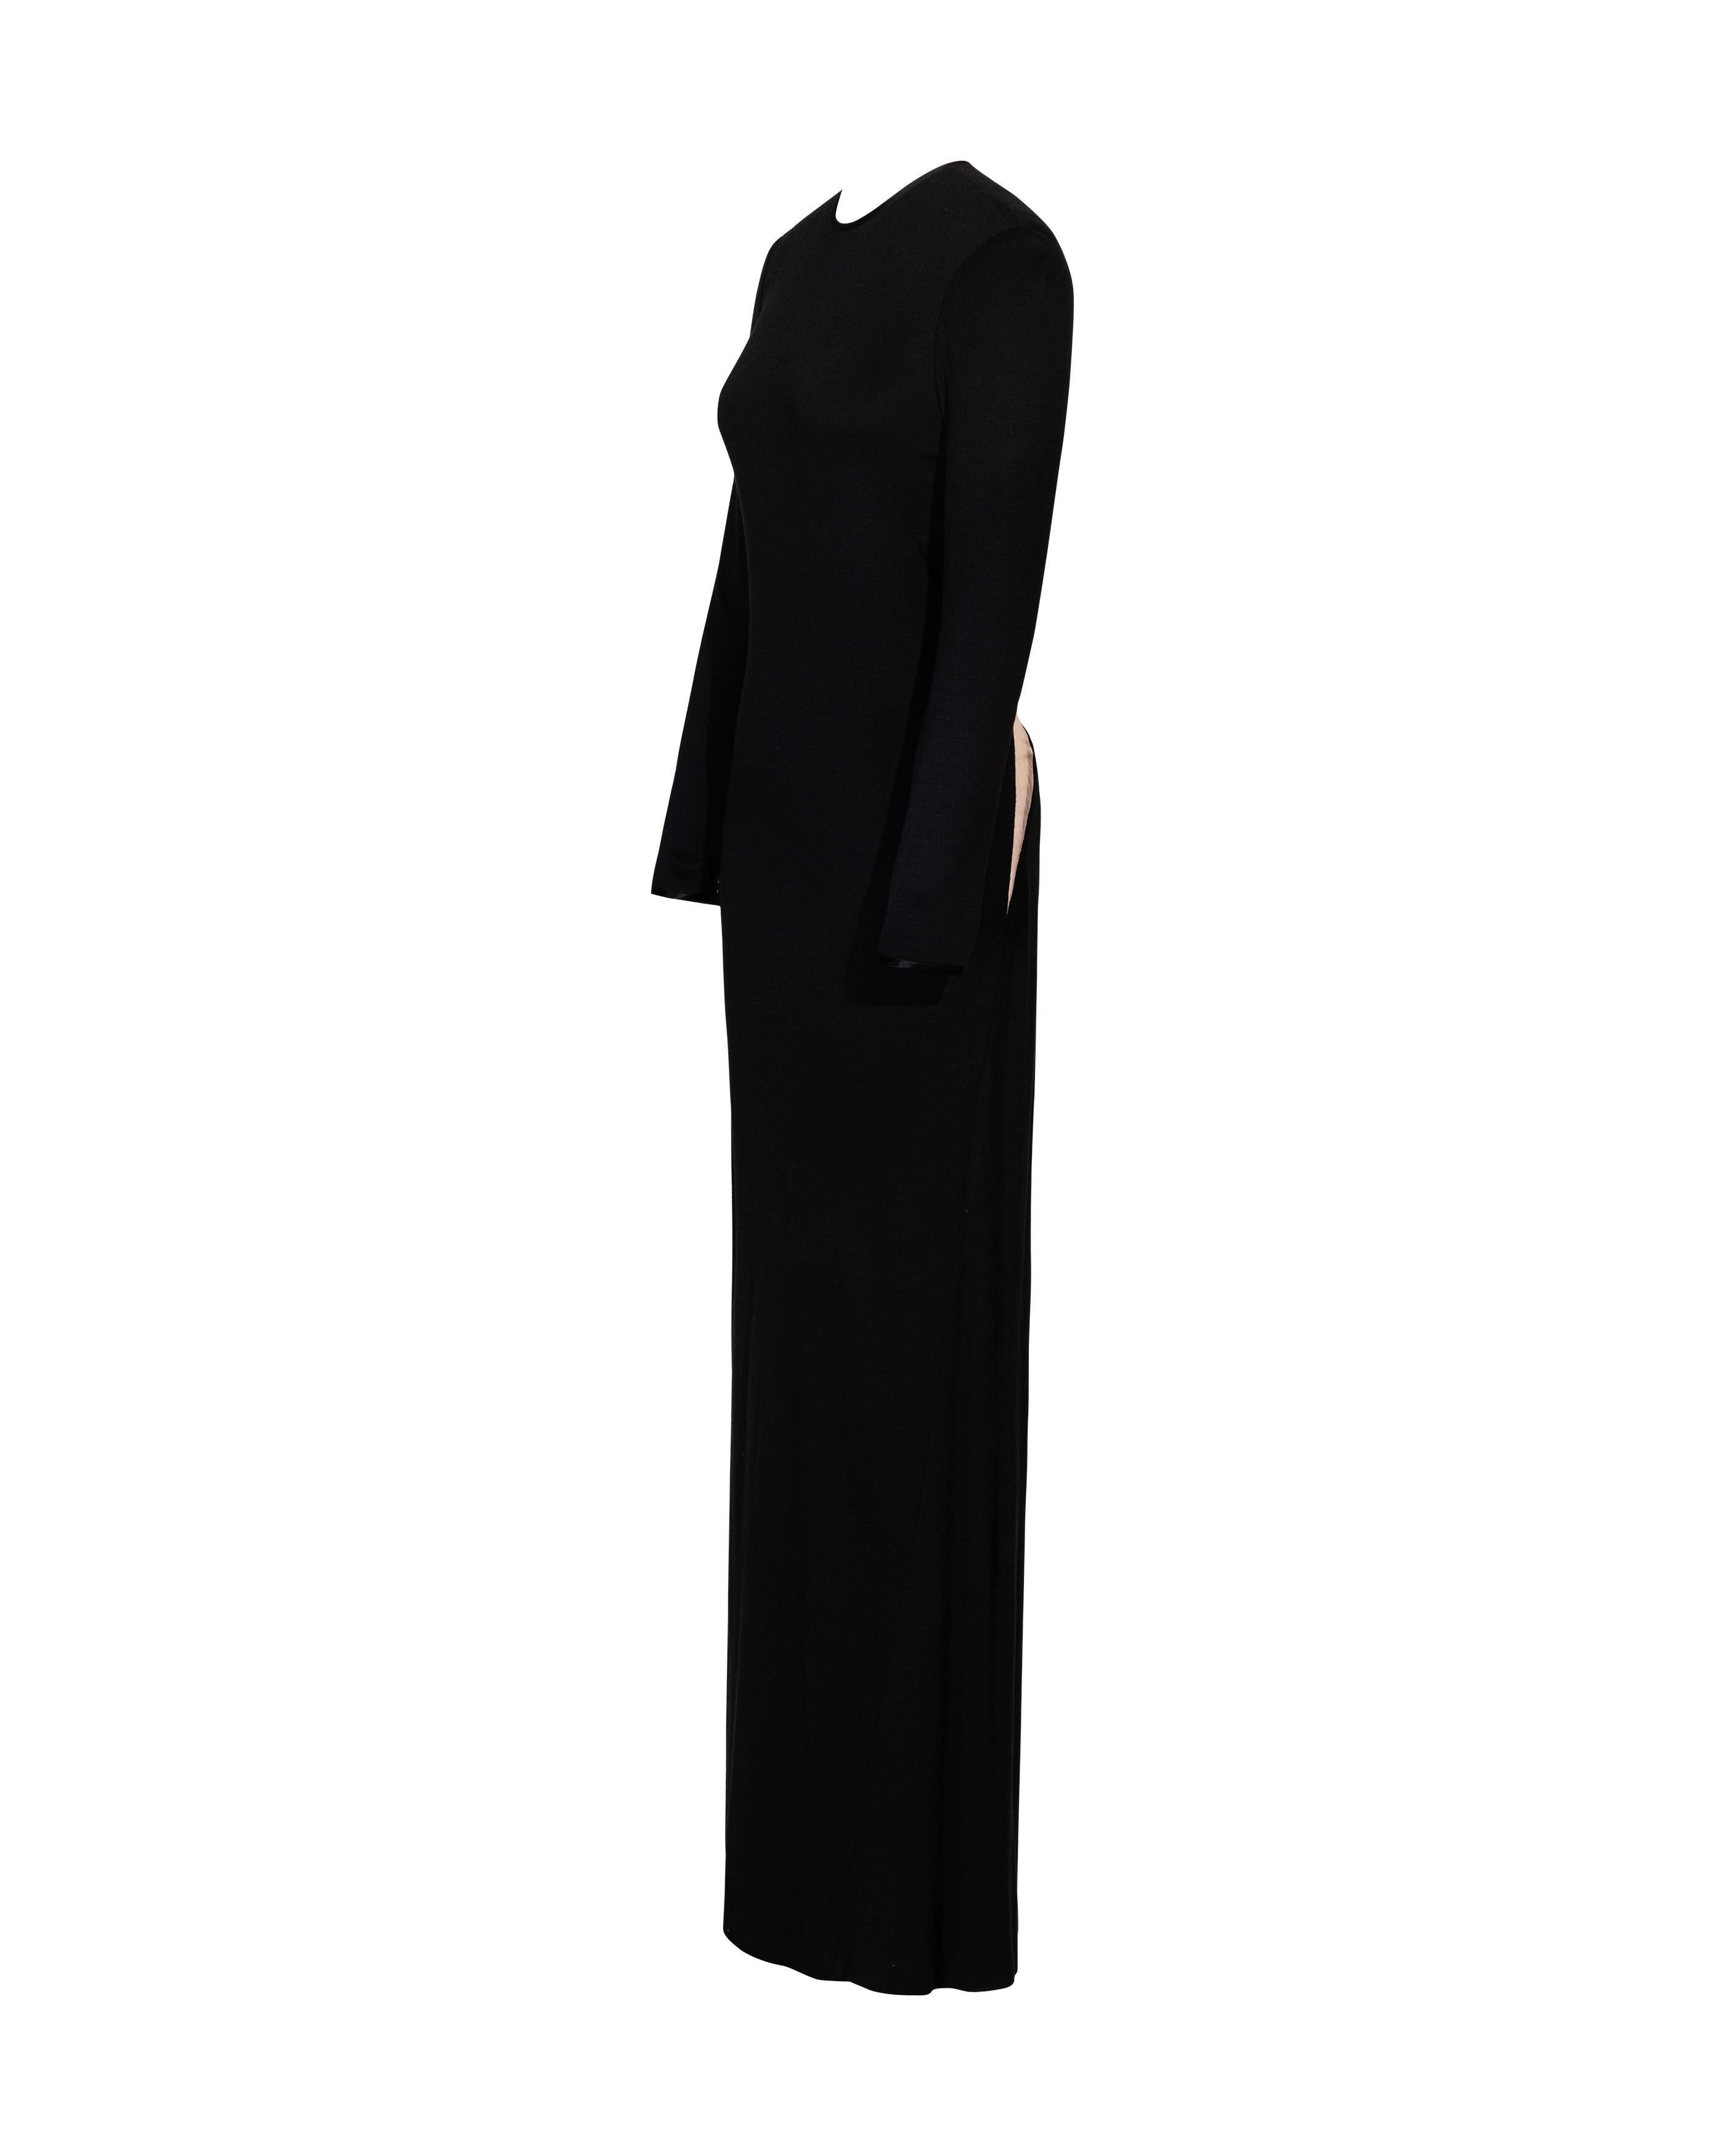 Women's A/W 1989 Geoffrey Beene Black Long Sleeve Open-back Gown